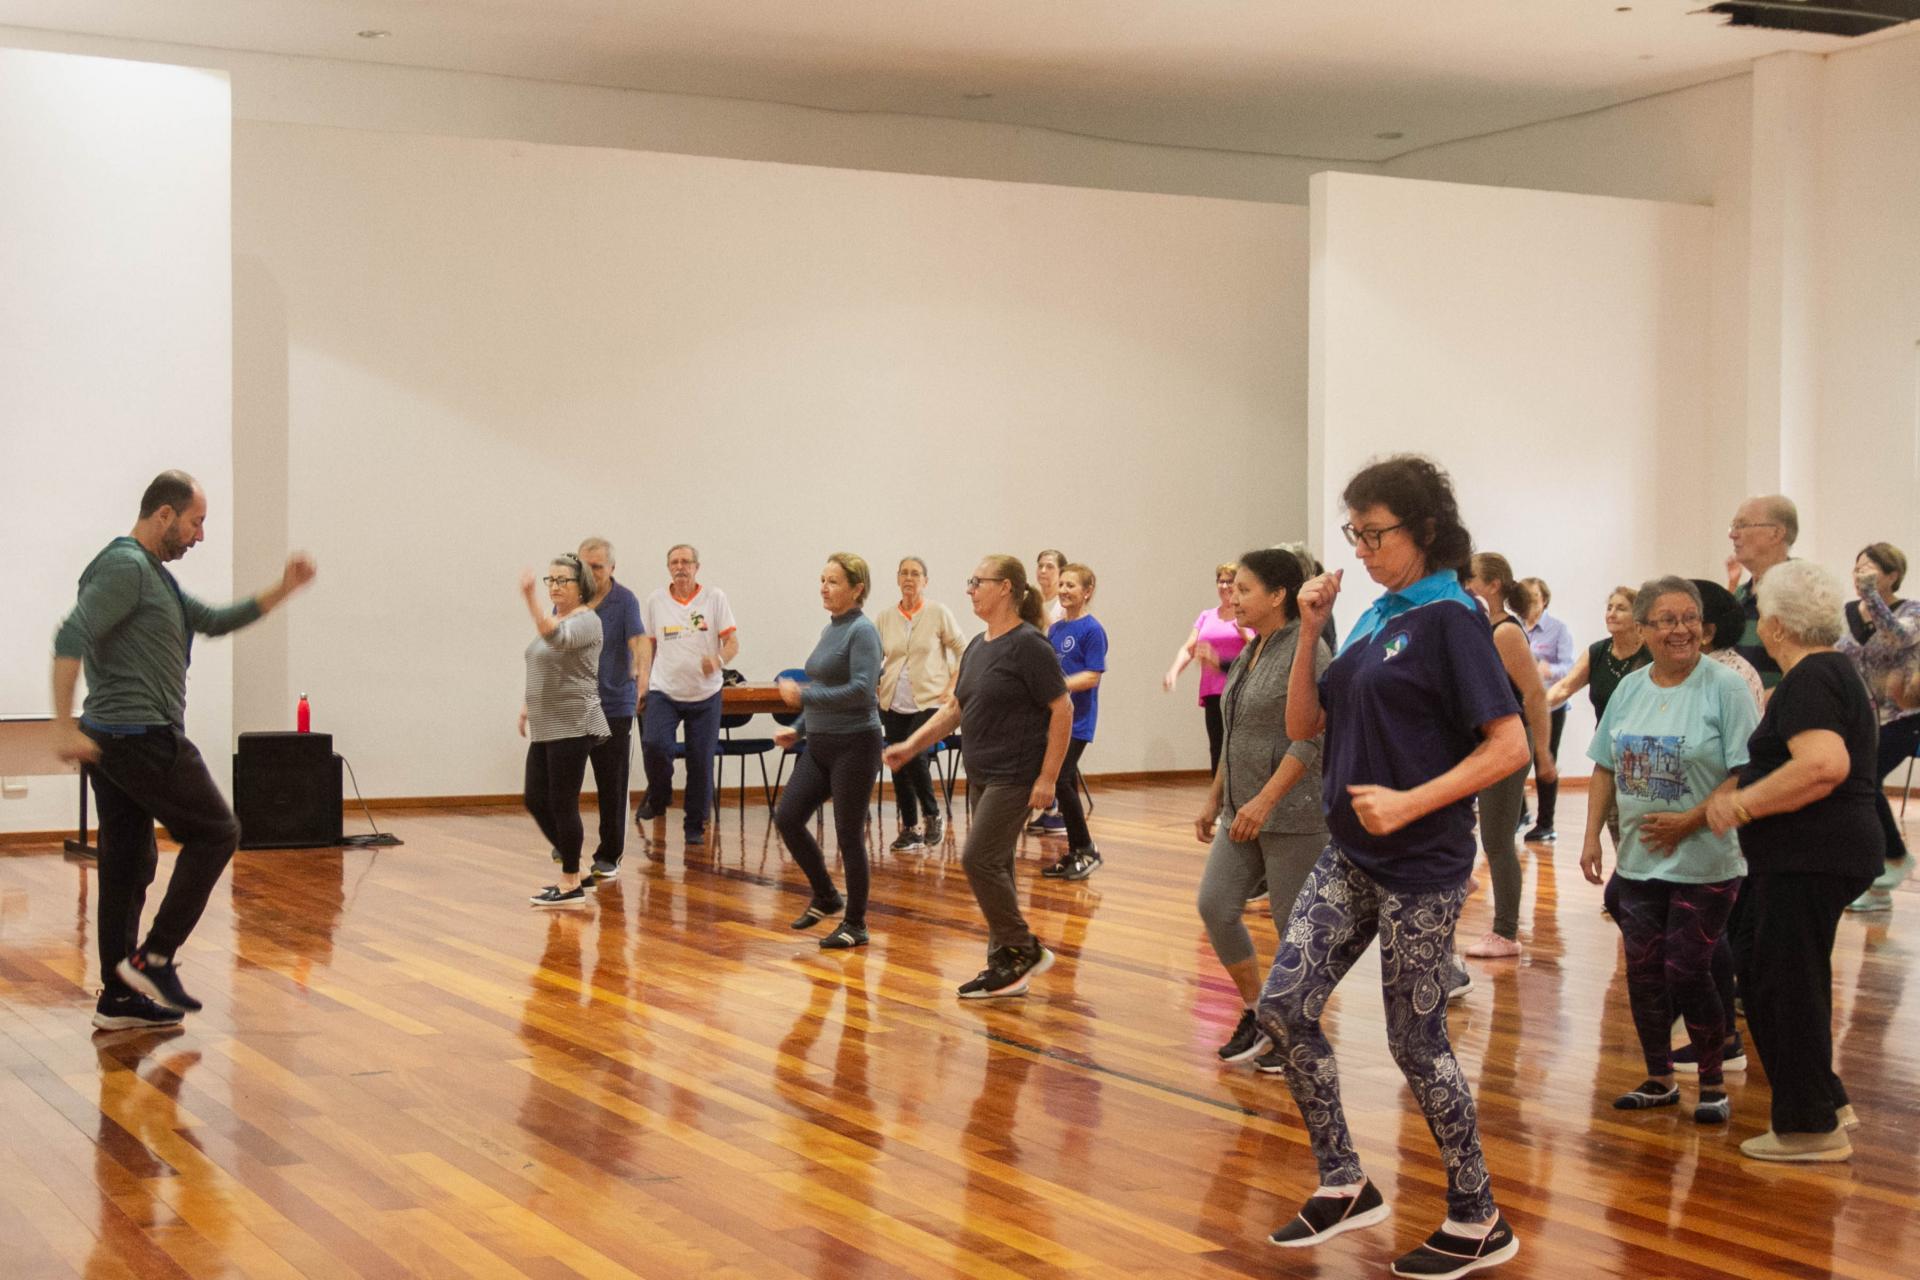 foto colorida horizontal com um grupo de pessoas, em sua maioria idosos, em uma sala ampla, fazendo movimentos de dança com os braços, e à frente delas, de frente para o grupo, um homem faz os movimentos que o grupo deve repetir